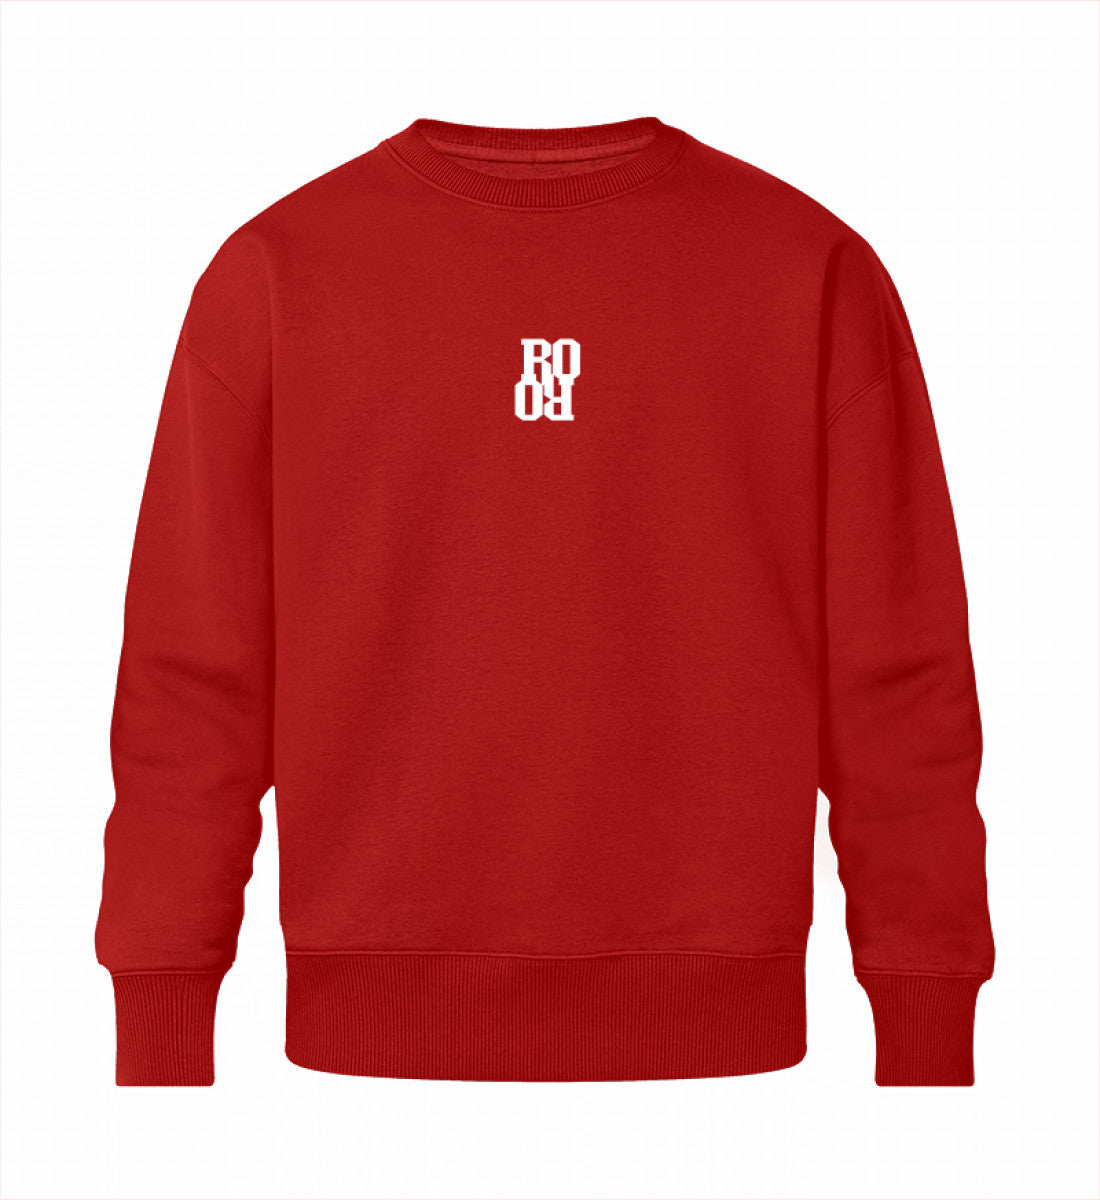 Rotes Sweatshirt Unisex für Frauen und Männer bedruckt mit dem Design der Roger Rockawoo Kollektion surf shredding Culture Community